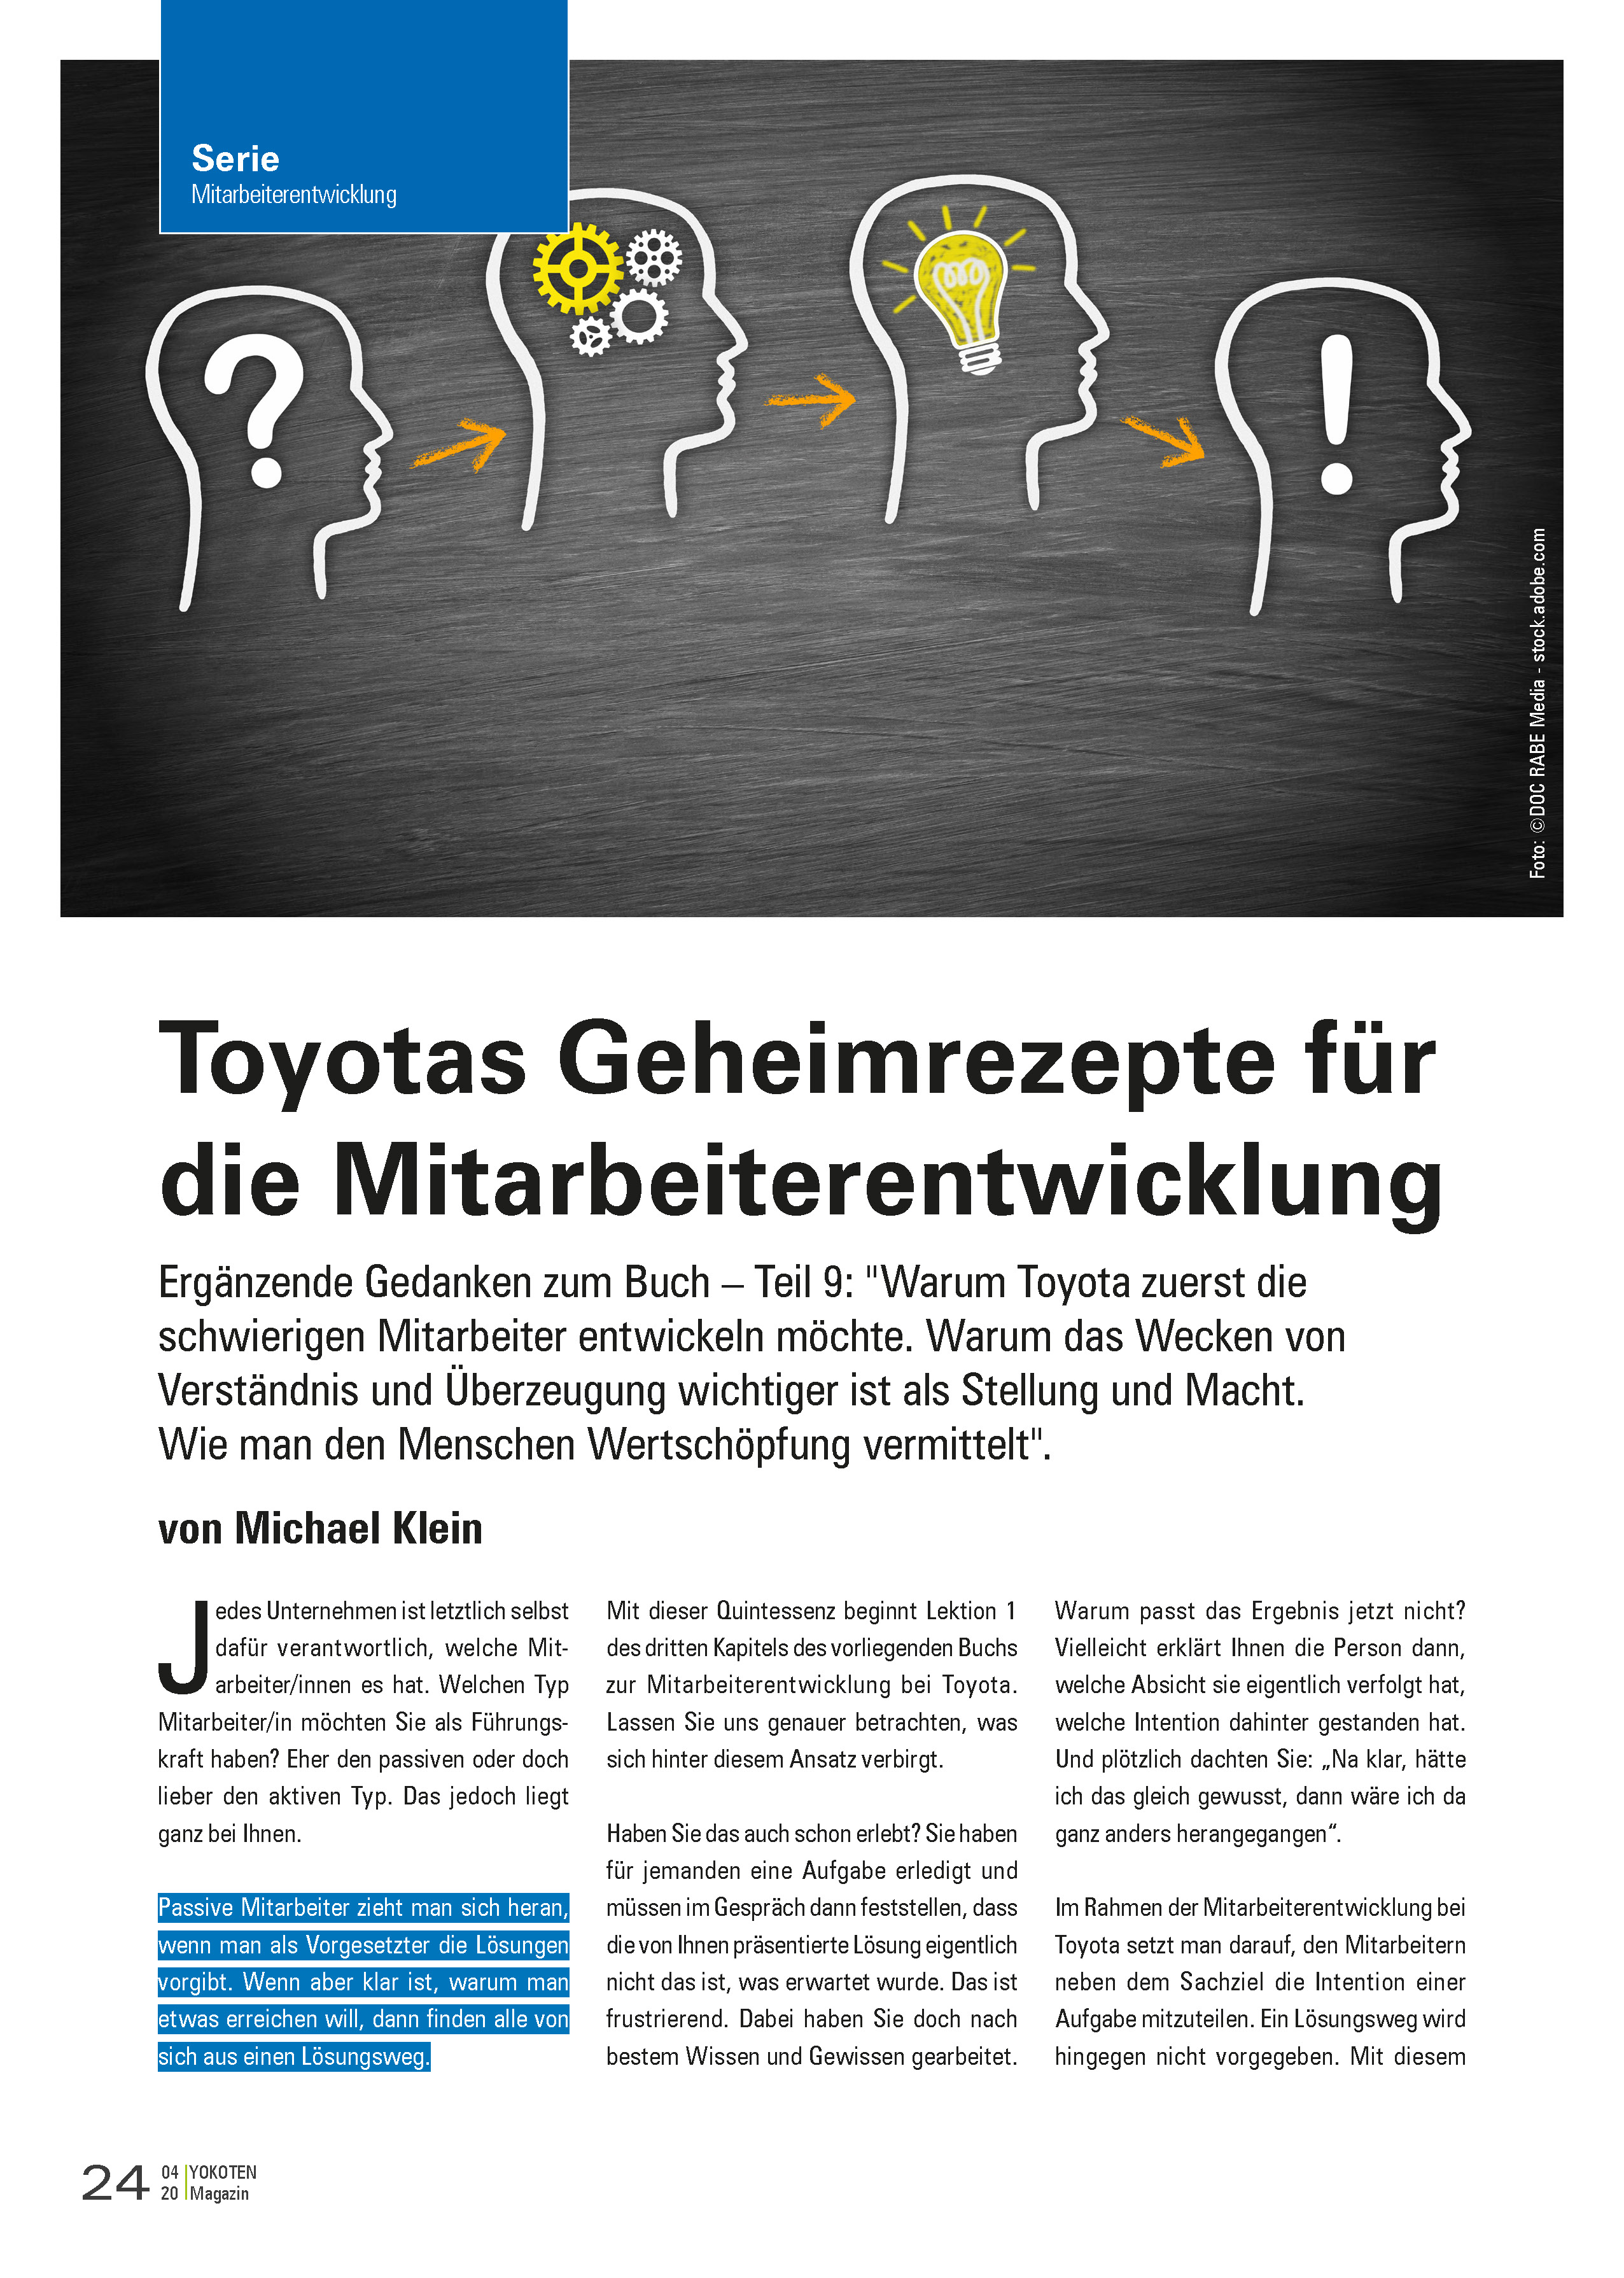 Toyotas Geheimrezepte für die Mitarbeiterentwicklung - Artikel aus Fachmagazin YOKOTEN 2020-04